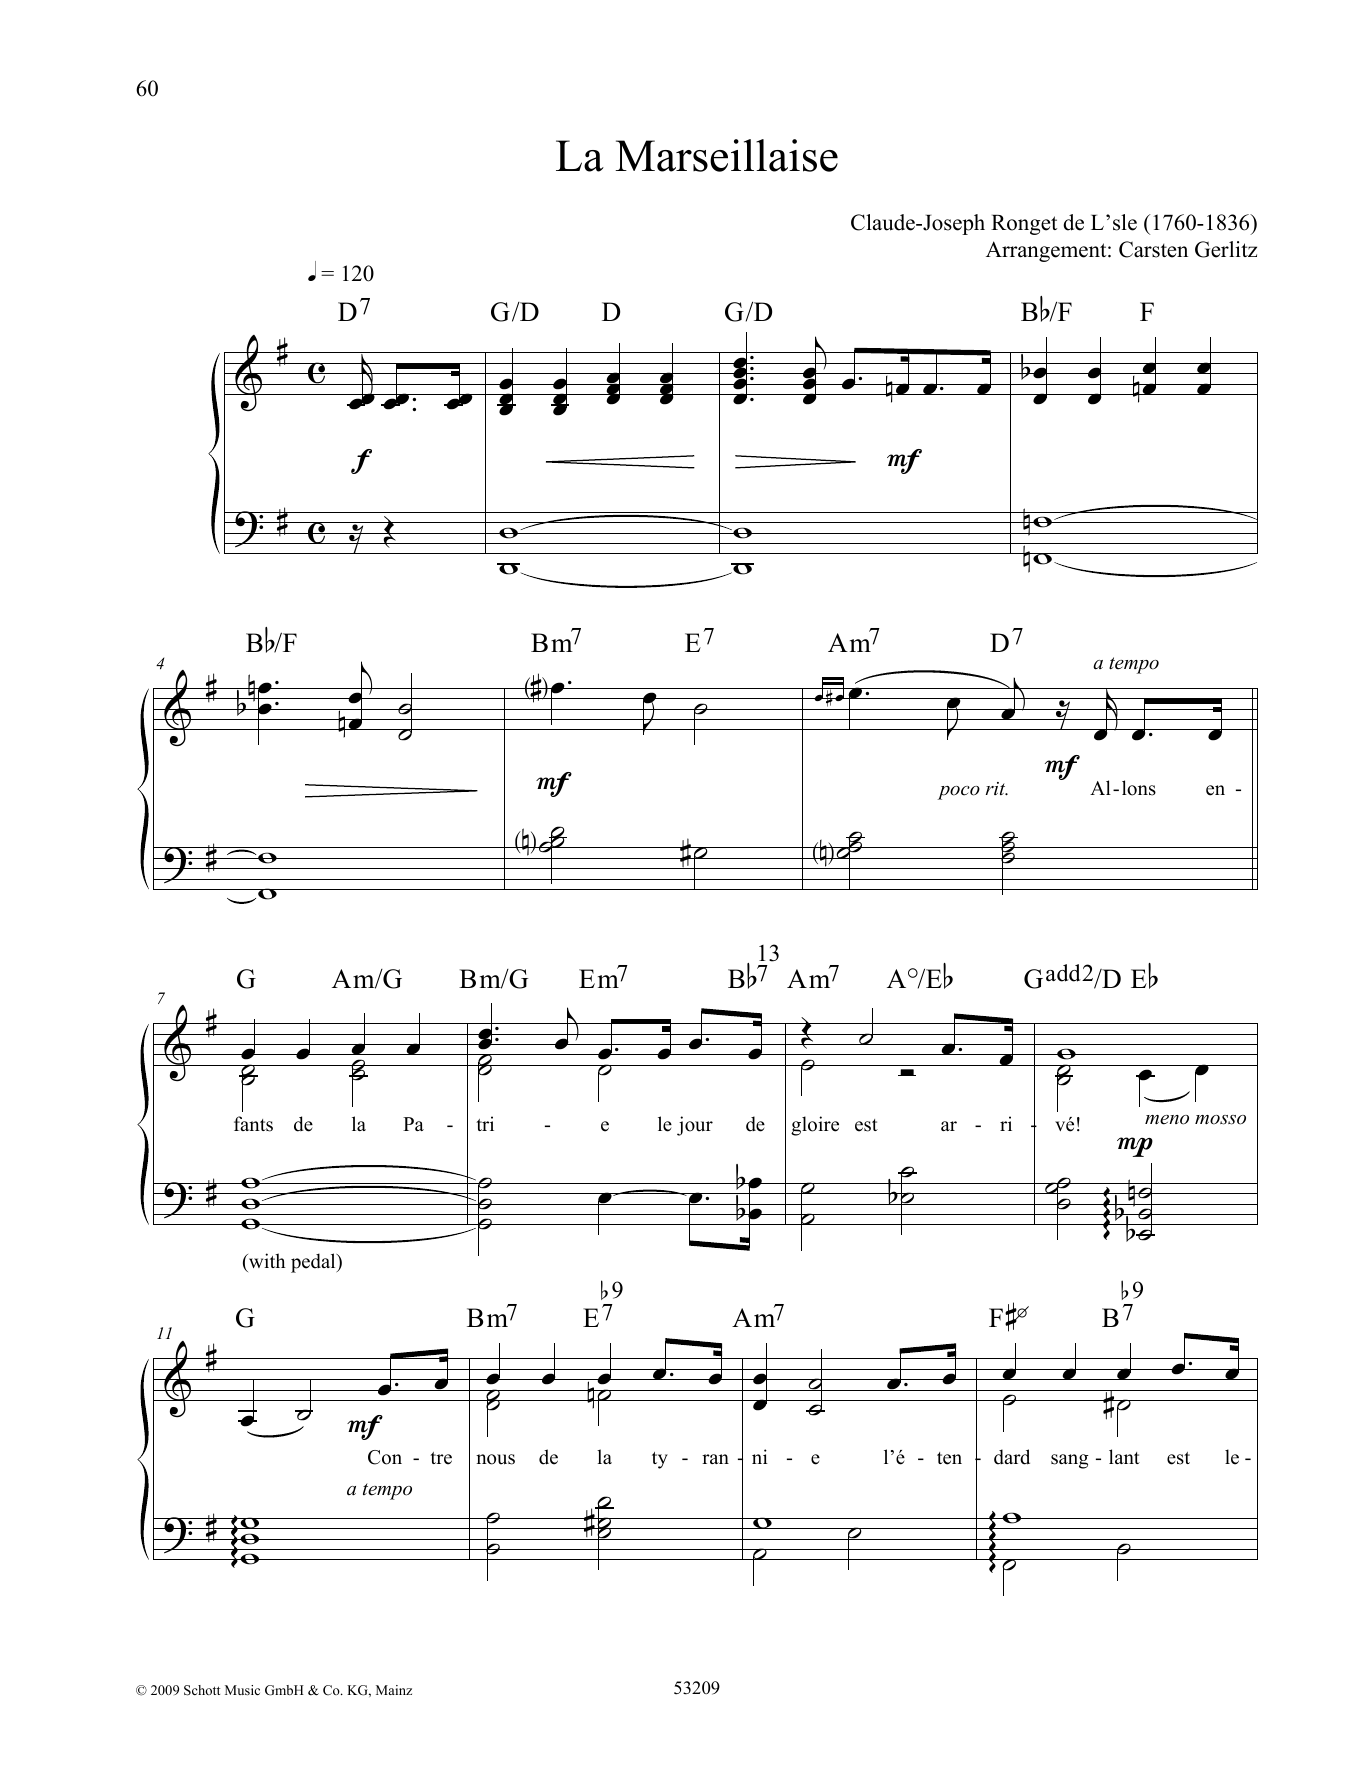 Claude Joseph Rouget De Lisle Au Clair De La Lune Sheet Music Notes & Chords for Piano Solo - Download or Print PDF